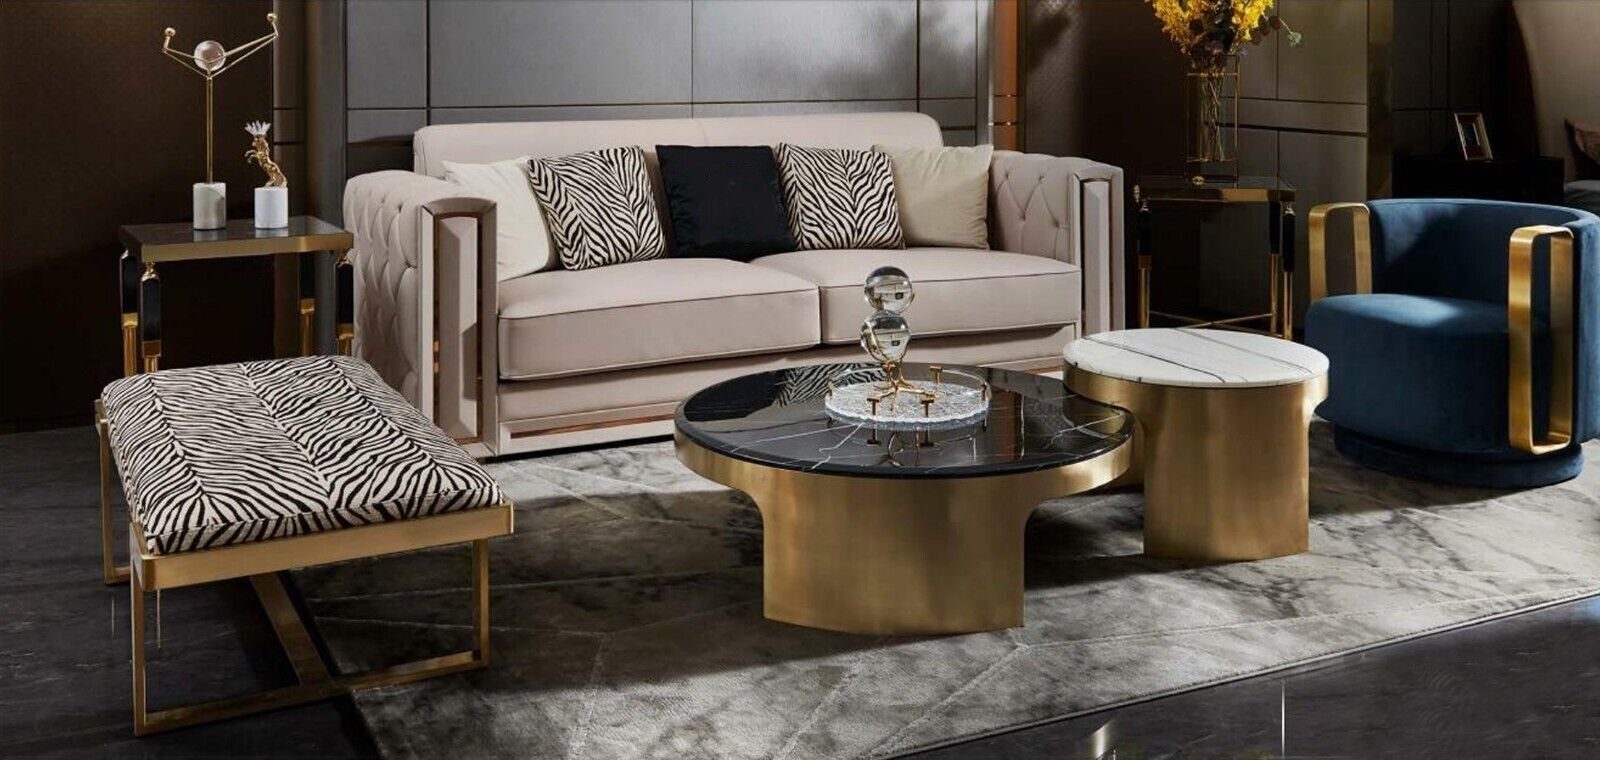 JVmoebel Couchtisch Doppelter Couchtisch Luxus Tisch Wohnzimmer Modern Möbel, Made In Europe